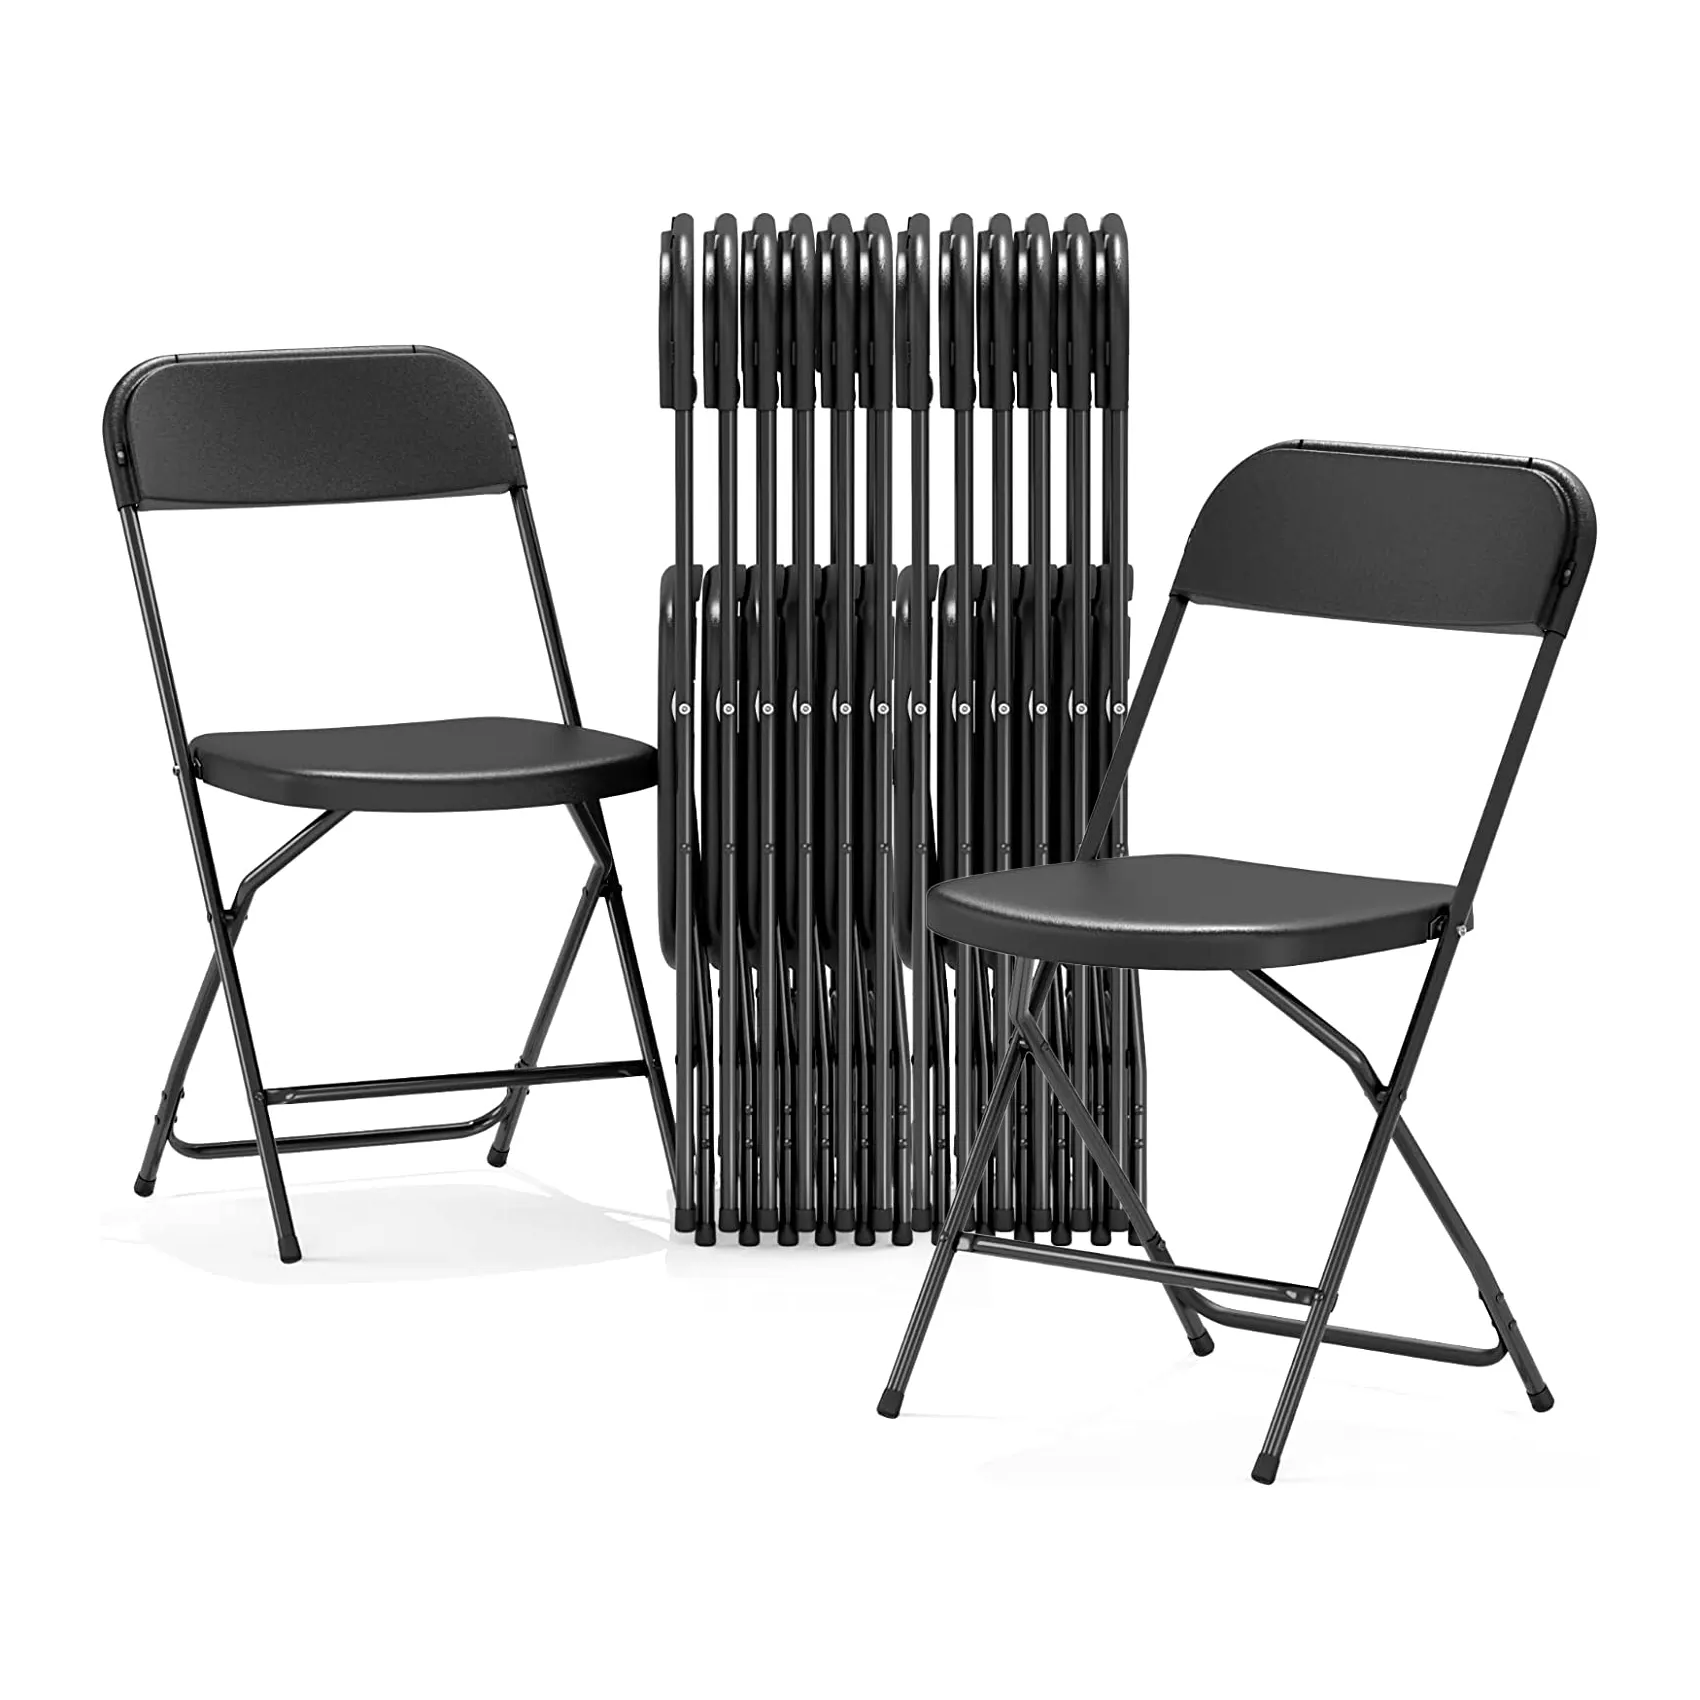 Envío rápido DDP servir logotipo personalizado negro plástico plegable jardín boda sillas para eventos de catering